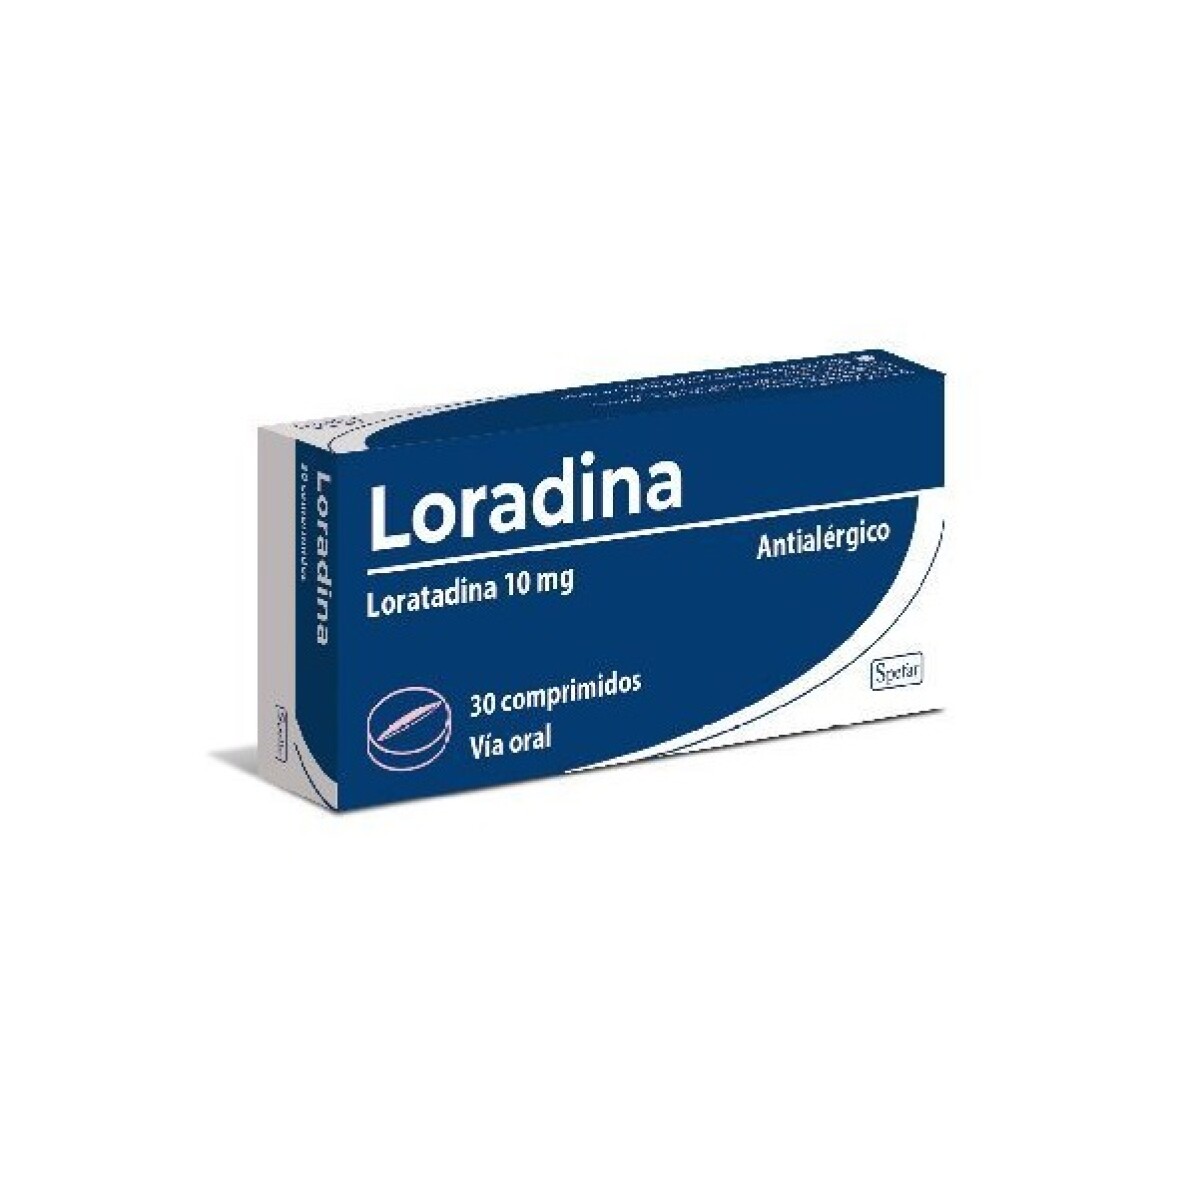 Loradina 30 Comp. 